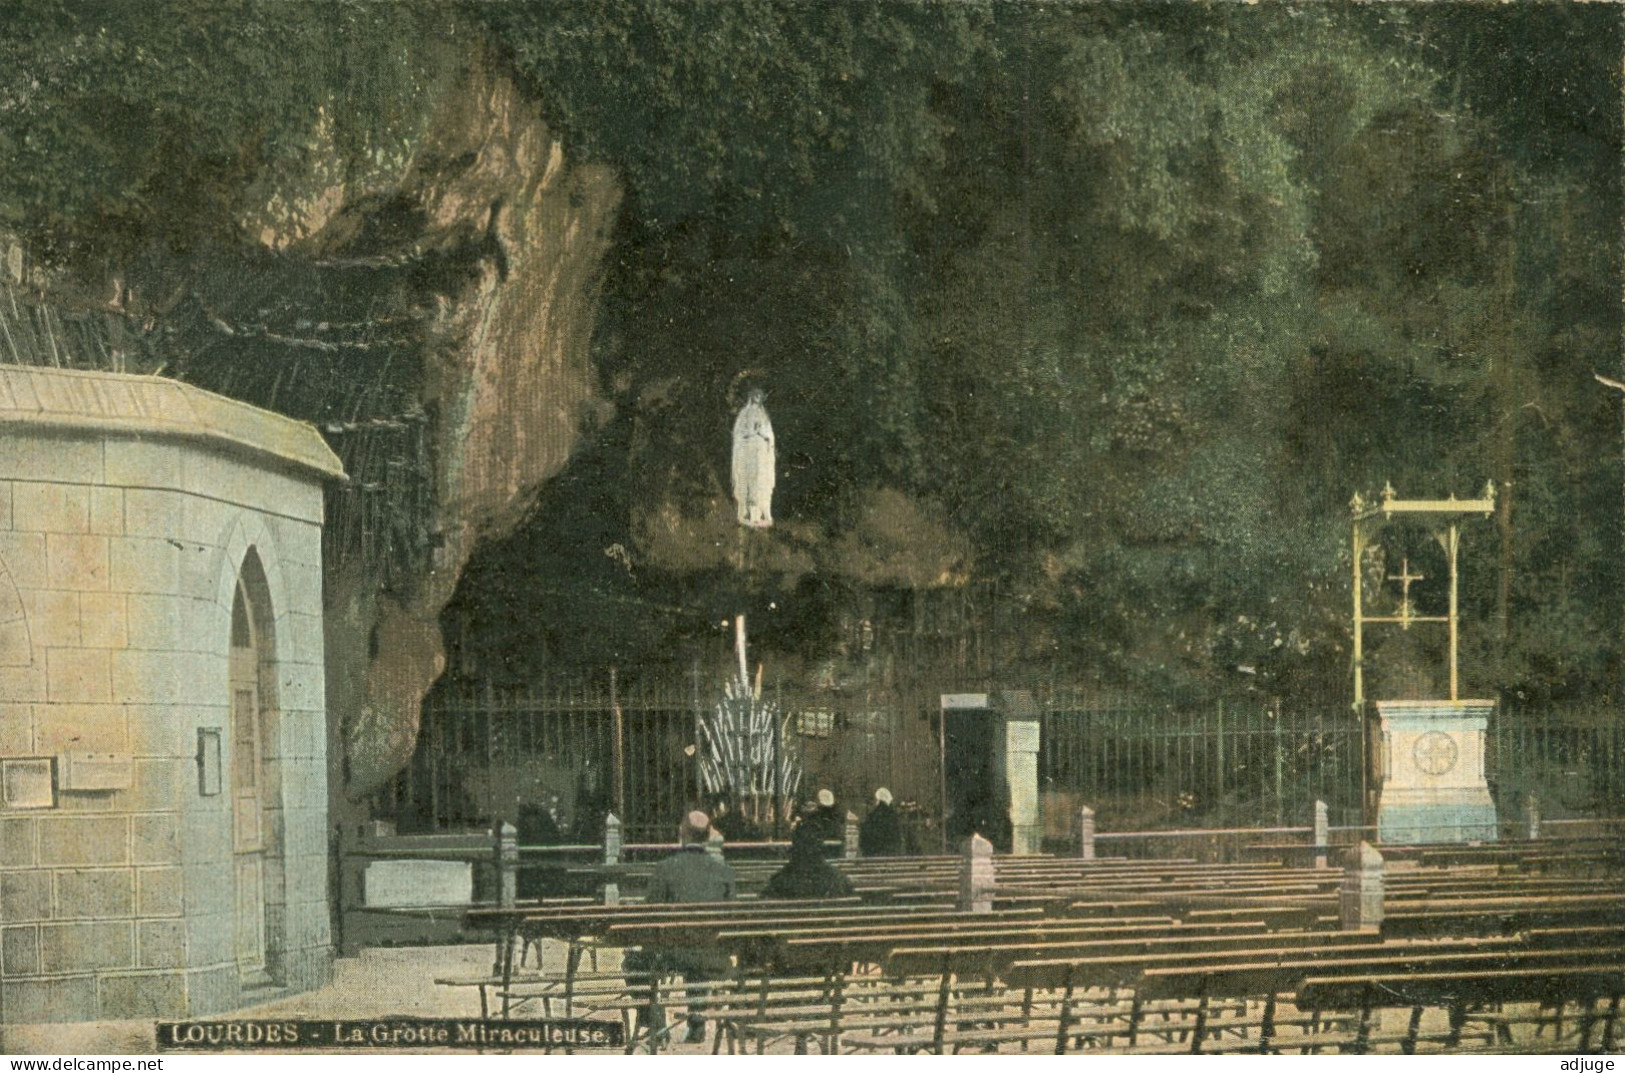 LOT de 8 Cartes - Publicité CHOCOLAT  LOUIT - Notre-Dame de Lourdes - Style Aqua-Photo - TBE** cf. Scans**